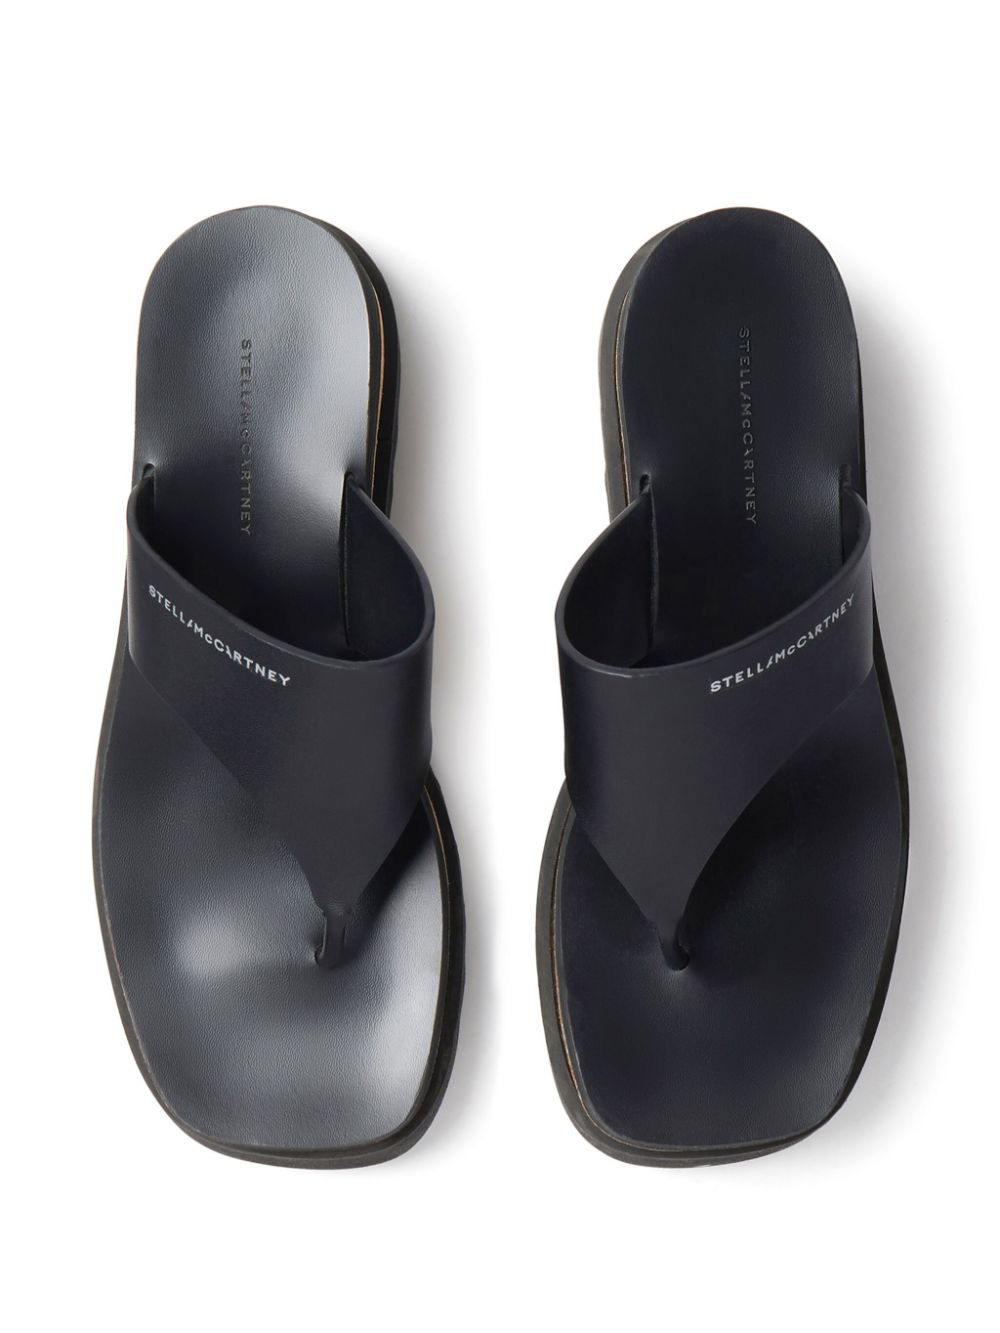 Sneak-Elyse logo-print platform sandals<BR/><BR/><BR/>